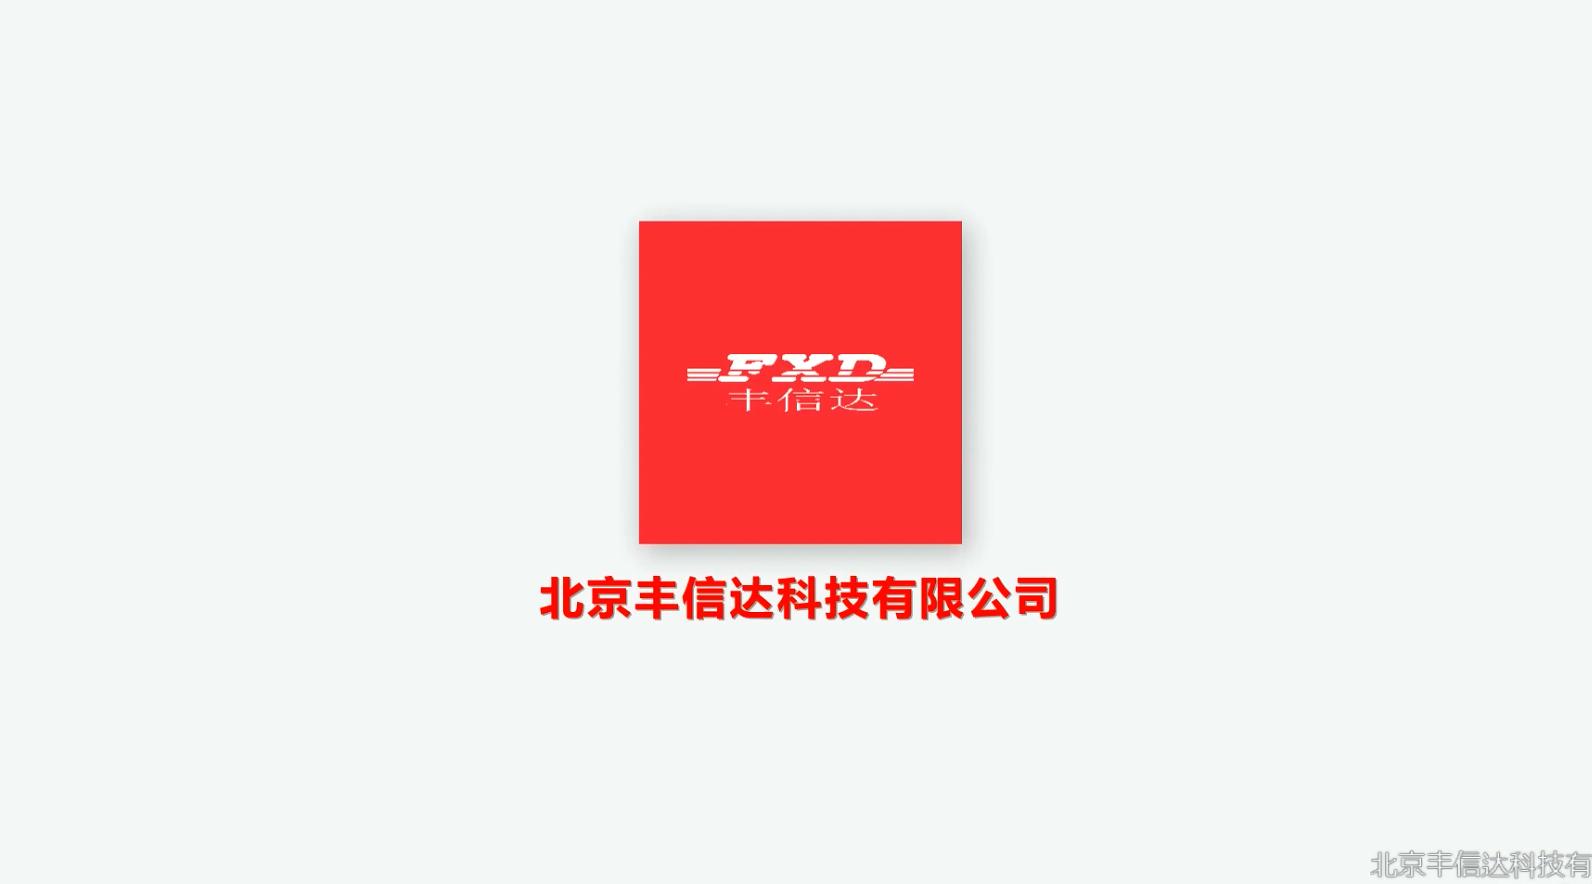 丰信达科技企业宣传片